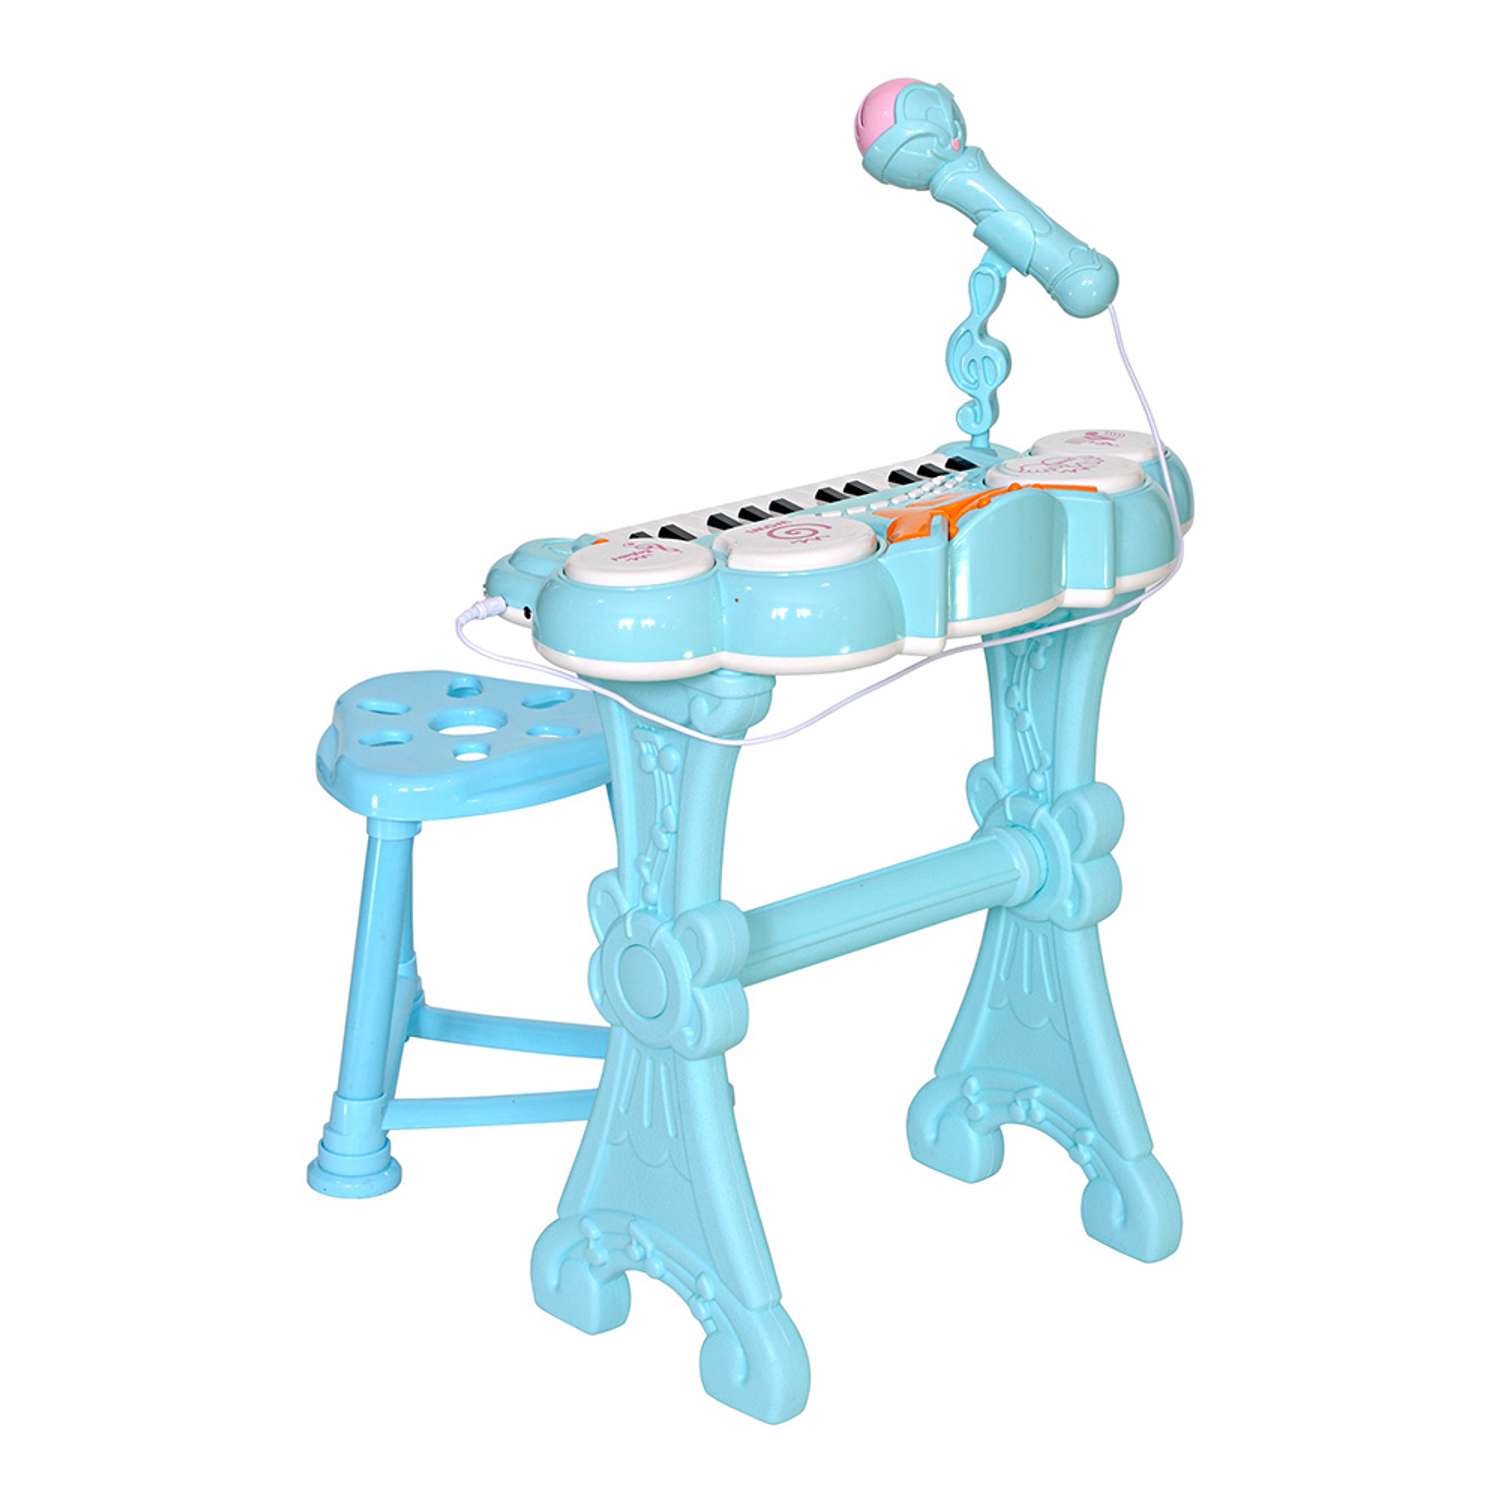 Музыкальный детский центр EVERFLO Пианино голубой HS0356831 - фото 2